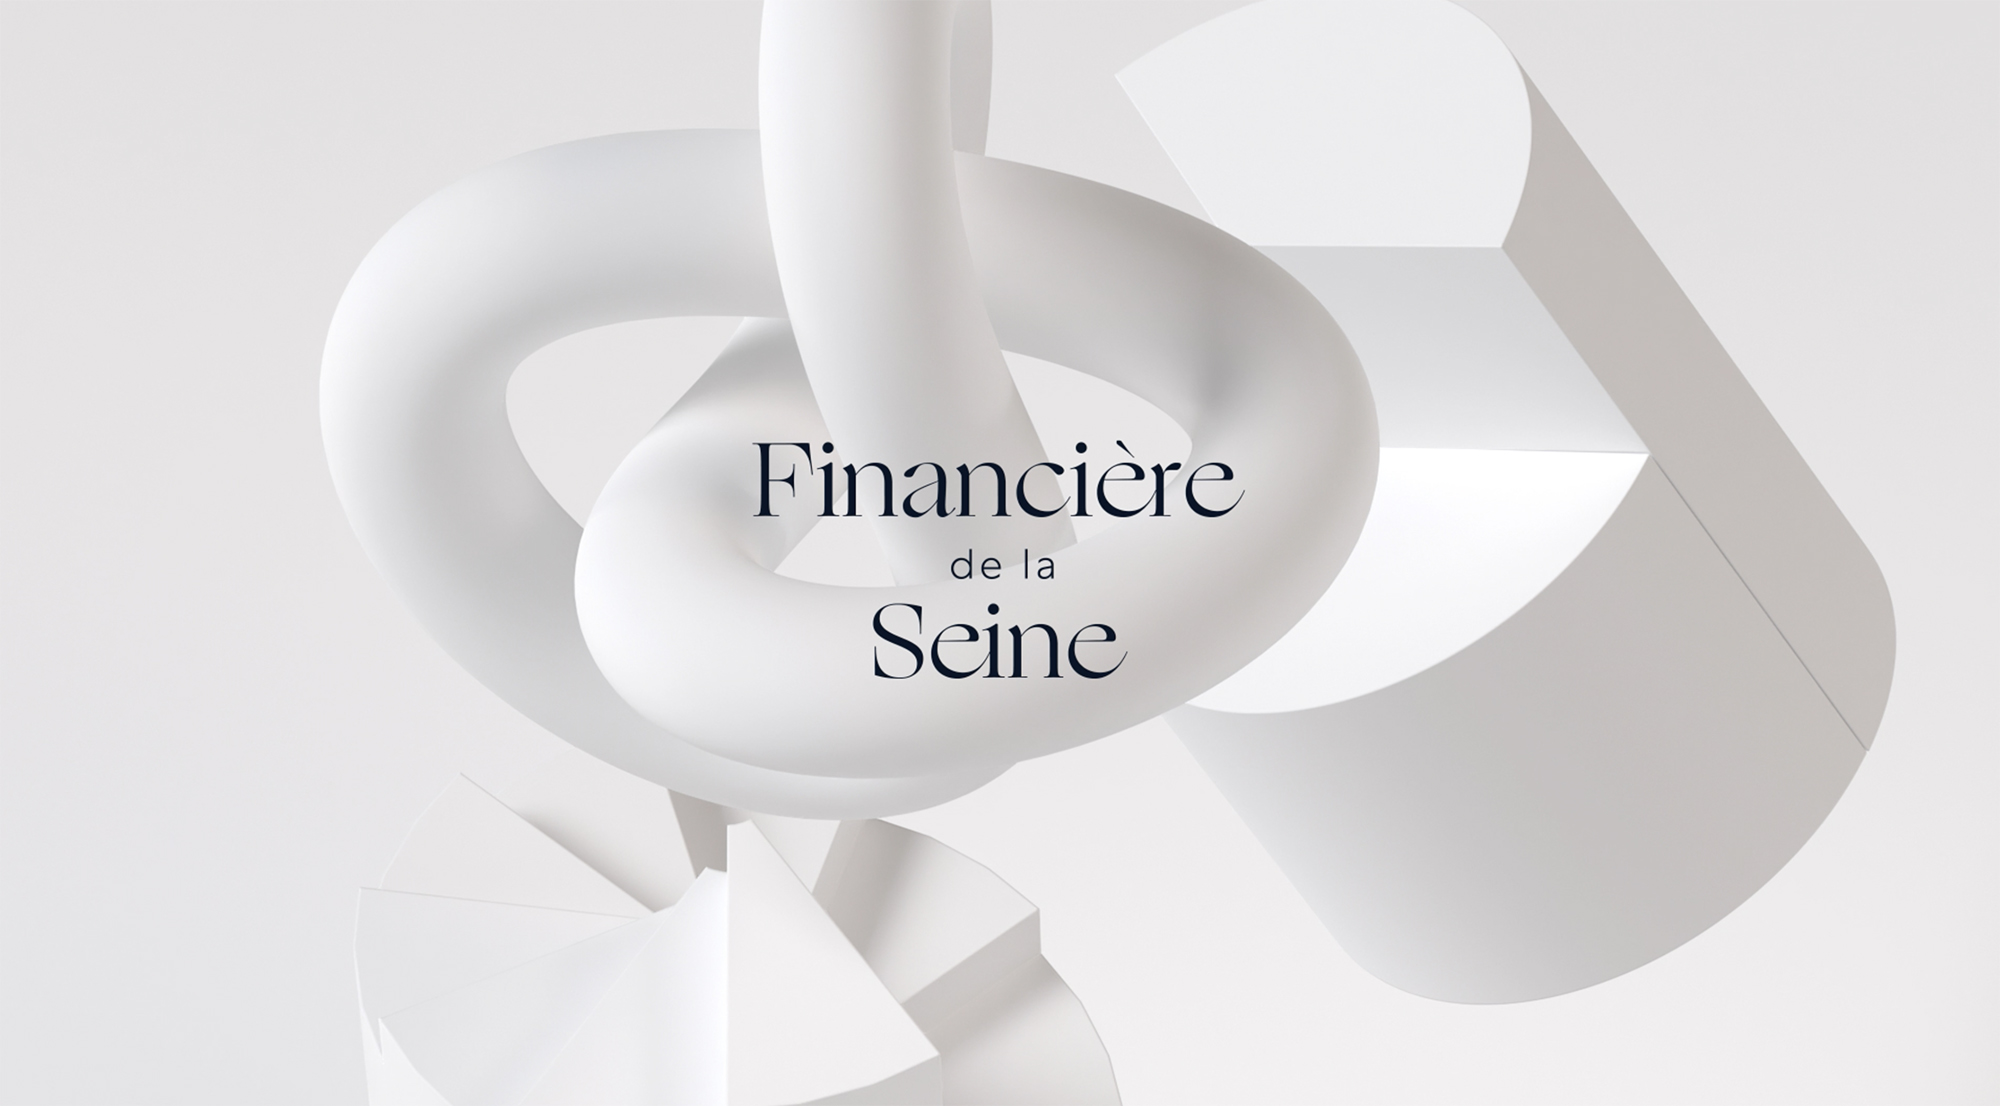 Financière de la Seine Branding - World Brand Design Society